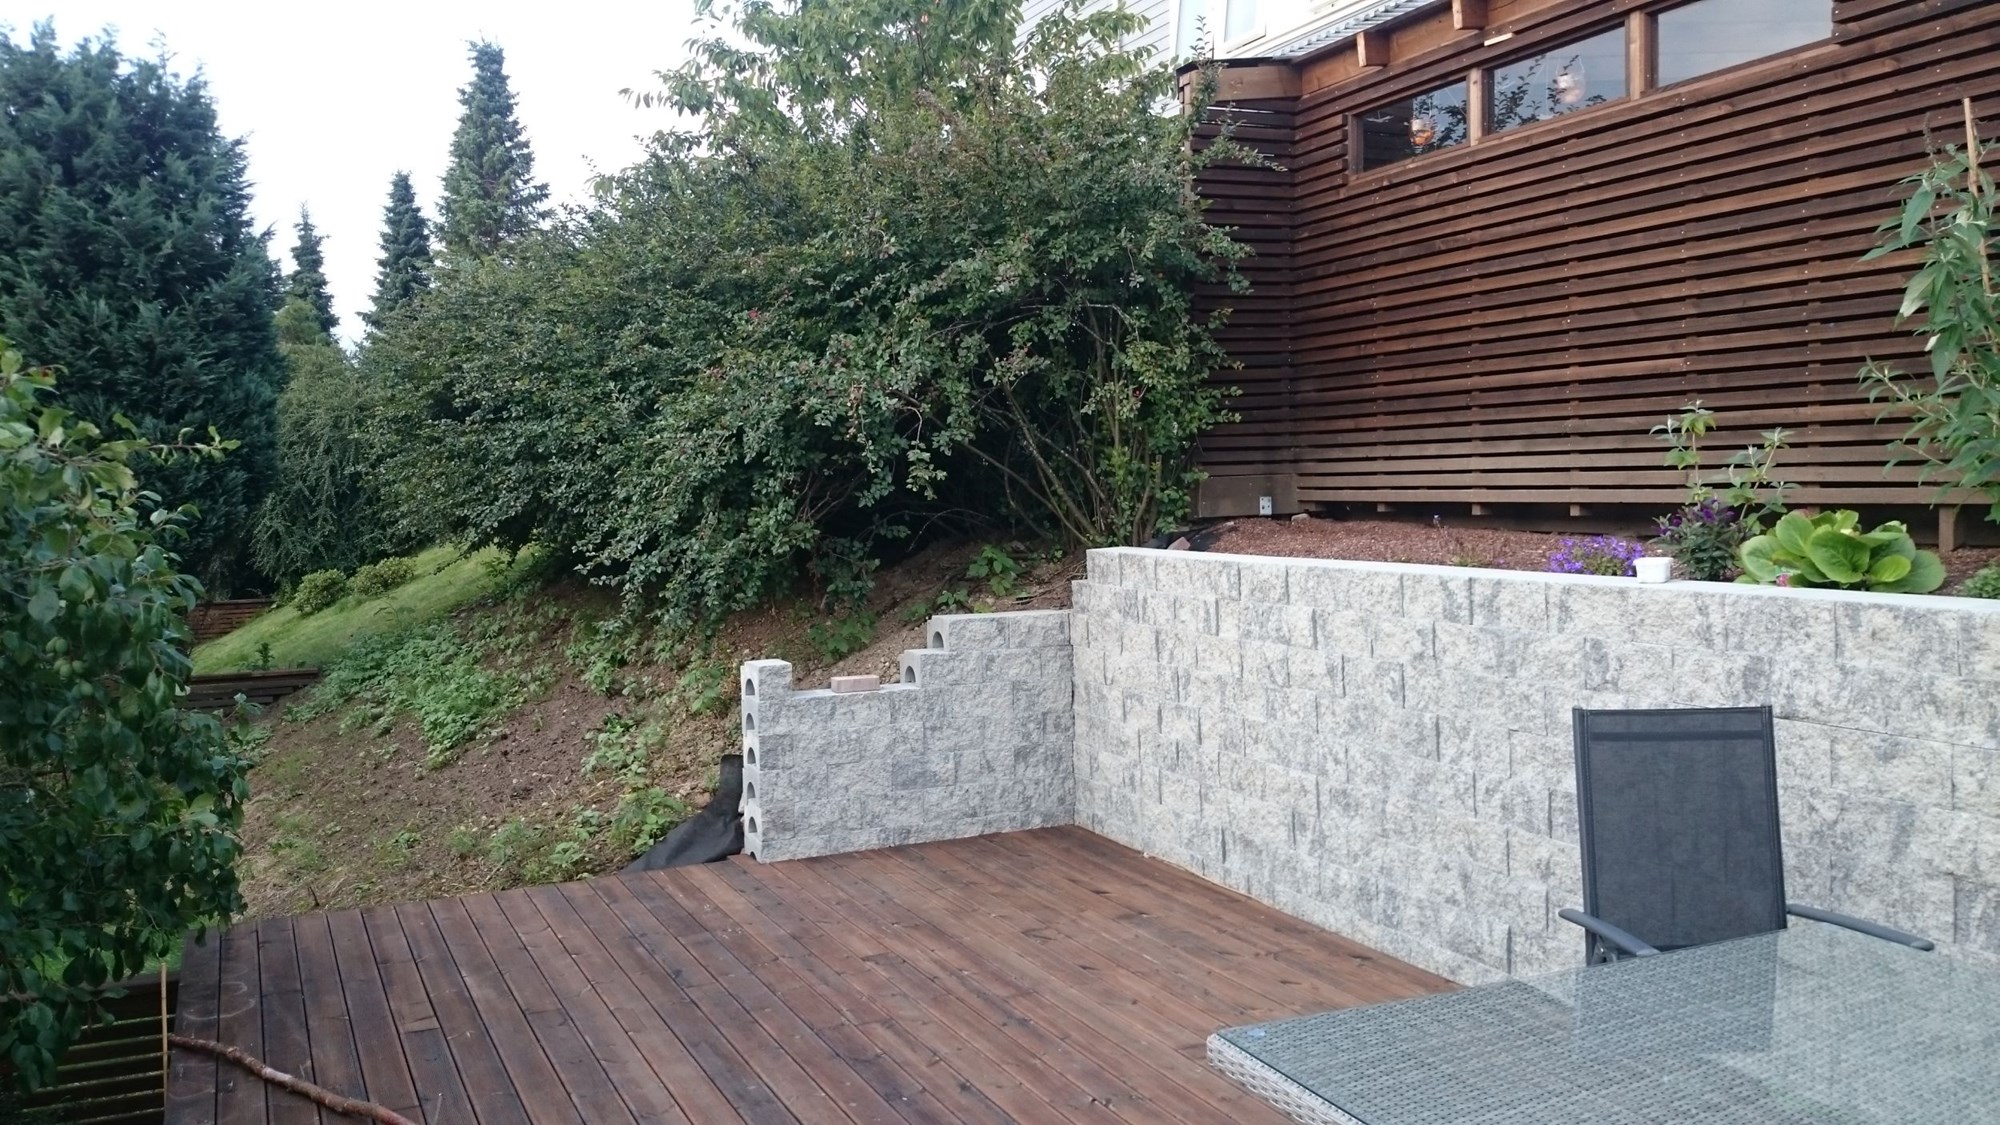 Bygge hagestue og behandling av limtre - Terrasse.jpg - Hanzo